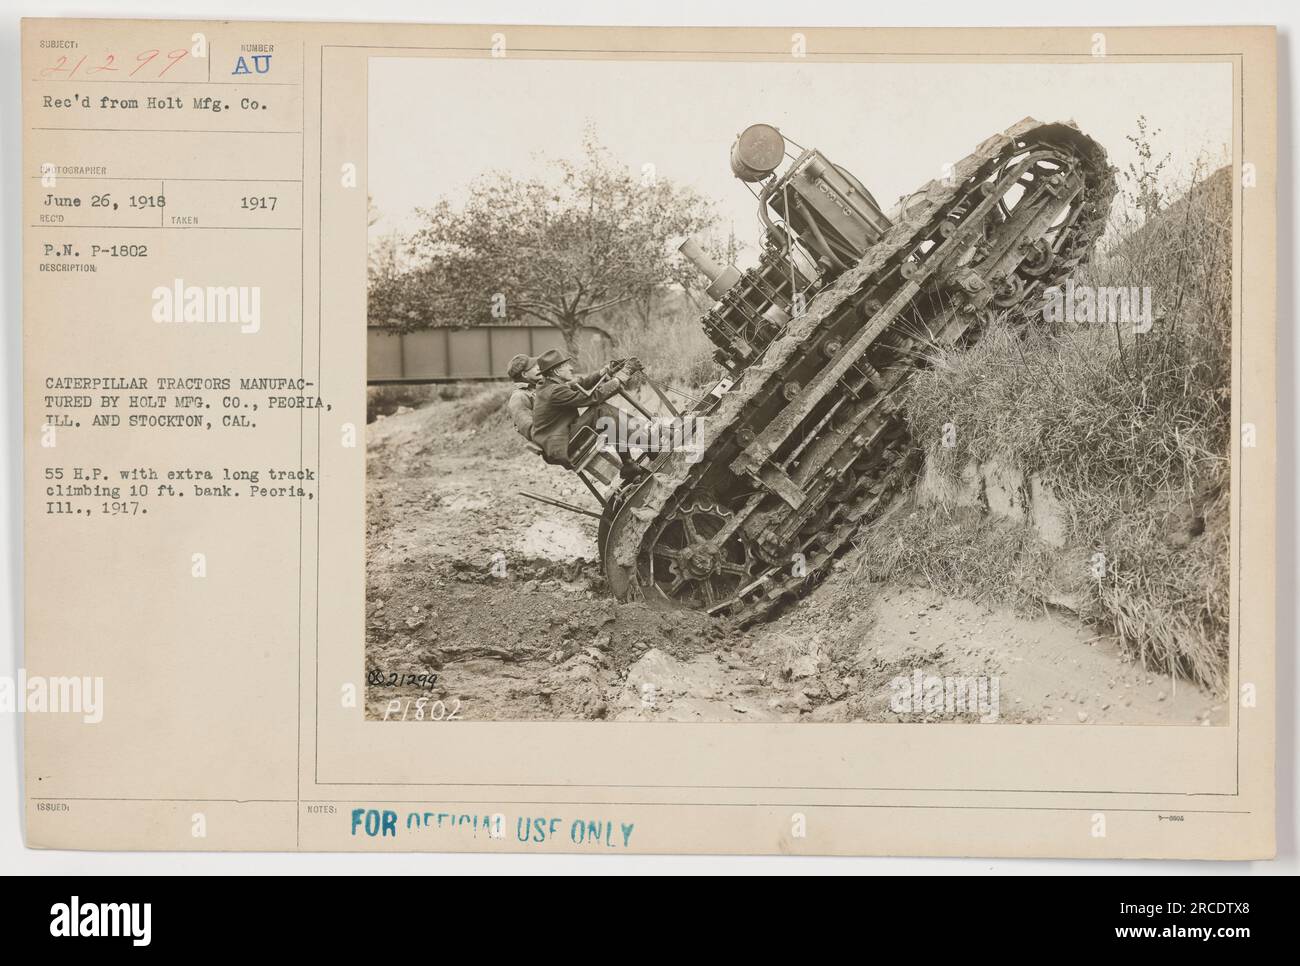 Ein Foto eines Caterpillar-Traktors, der 1917 von holt Mfg. Co. In Peoria, Illinois, und Stockton, Kalifornien, hergestellt wurde. Der Traktor ist ein Modell 188 mit 55 PS und wird auf einer 10 Fuß hohen Bank mit seiner extralangen Kette gezeigt. Das Bild wurde 1917 in Peoria, Illinois, aufgenommen. Nur zur amtlichen Verwendung. Stockfoto